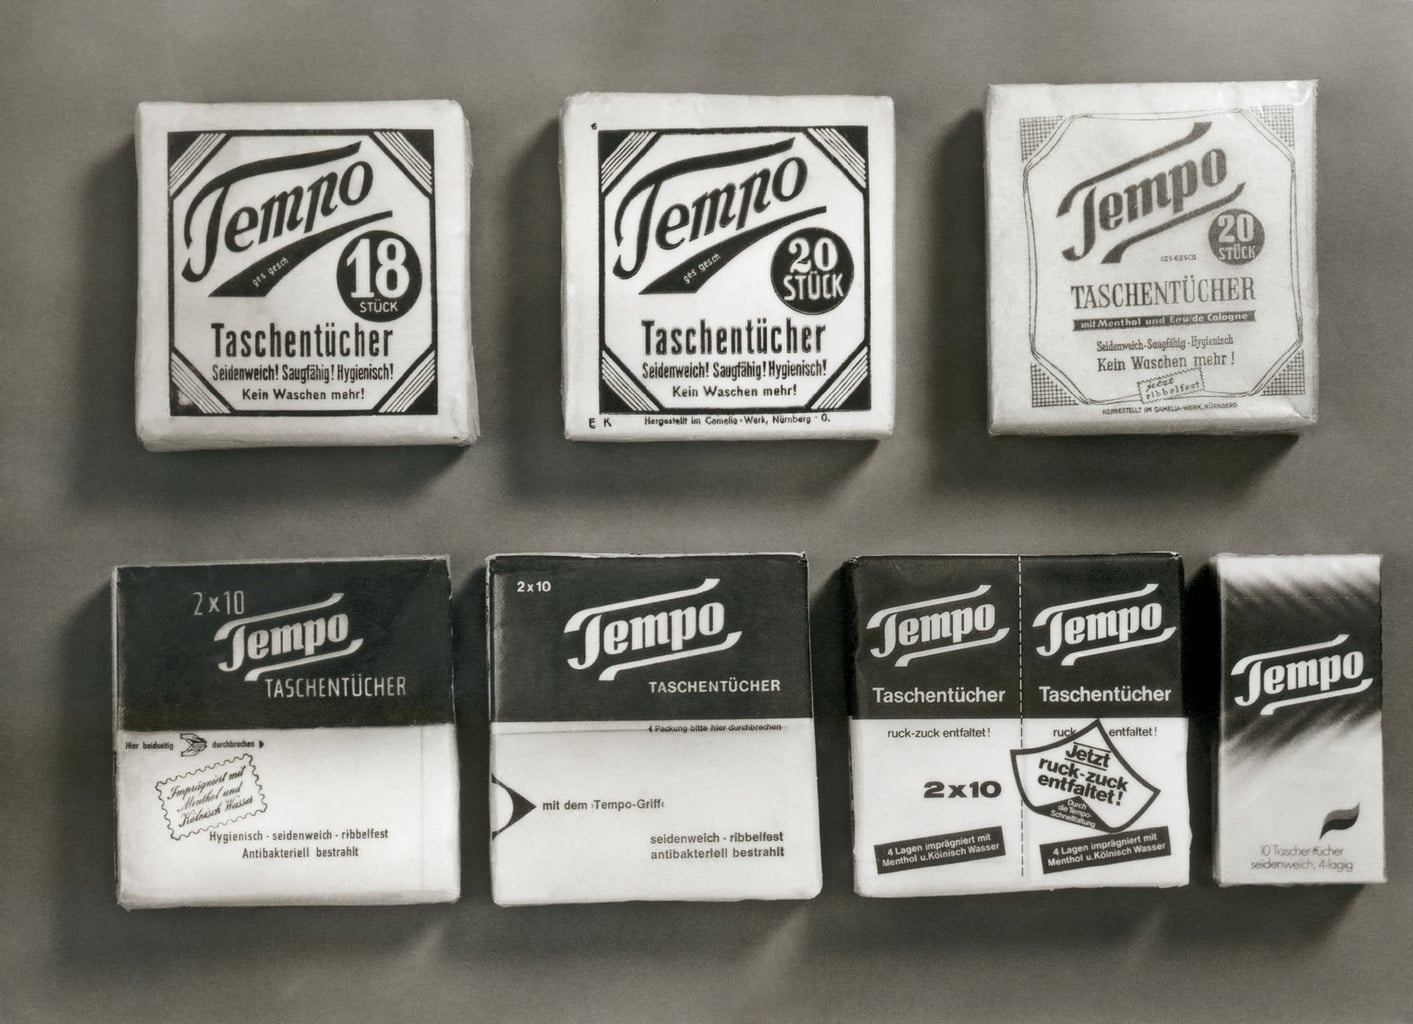 Het Tempo zakdoekje is een essentiele Duitse uitvinding.